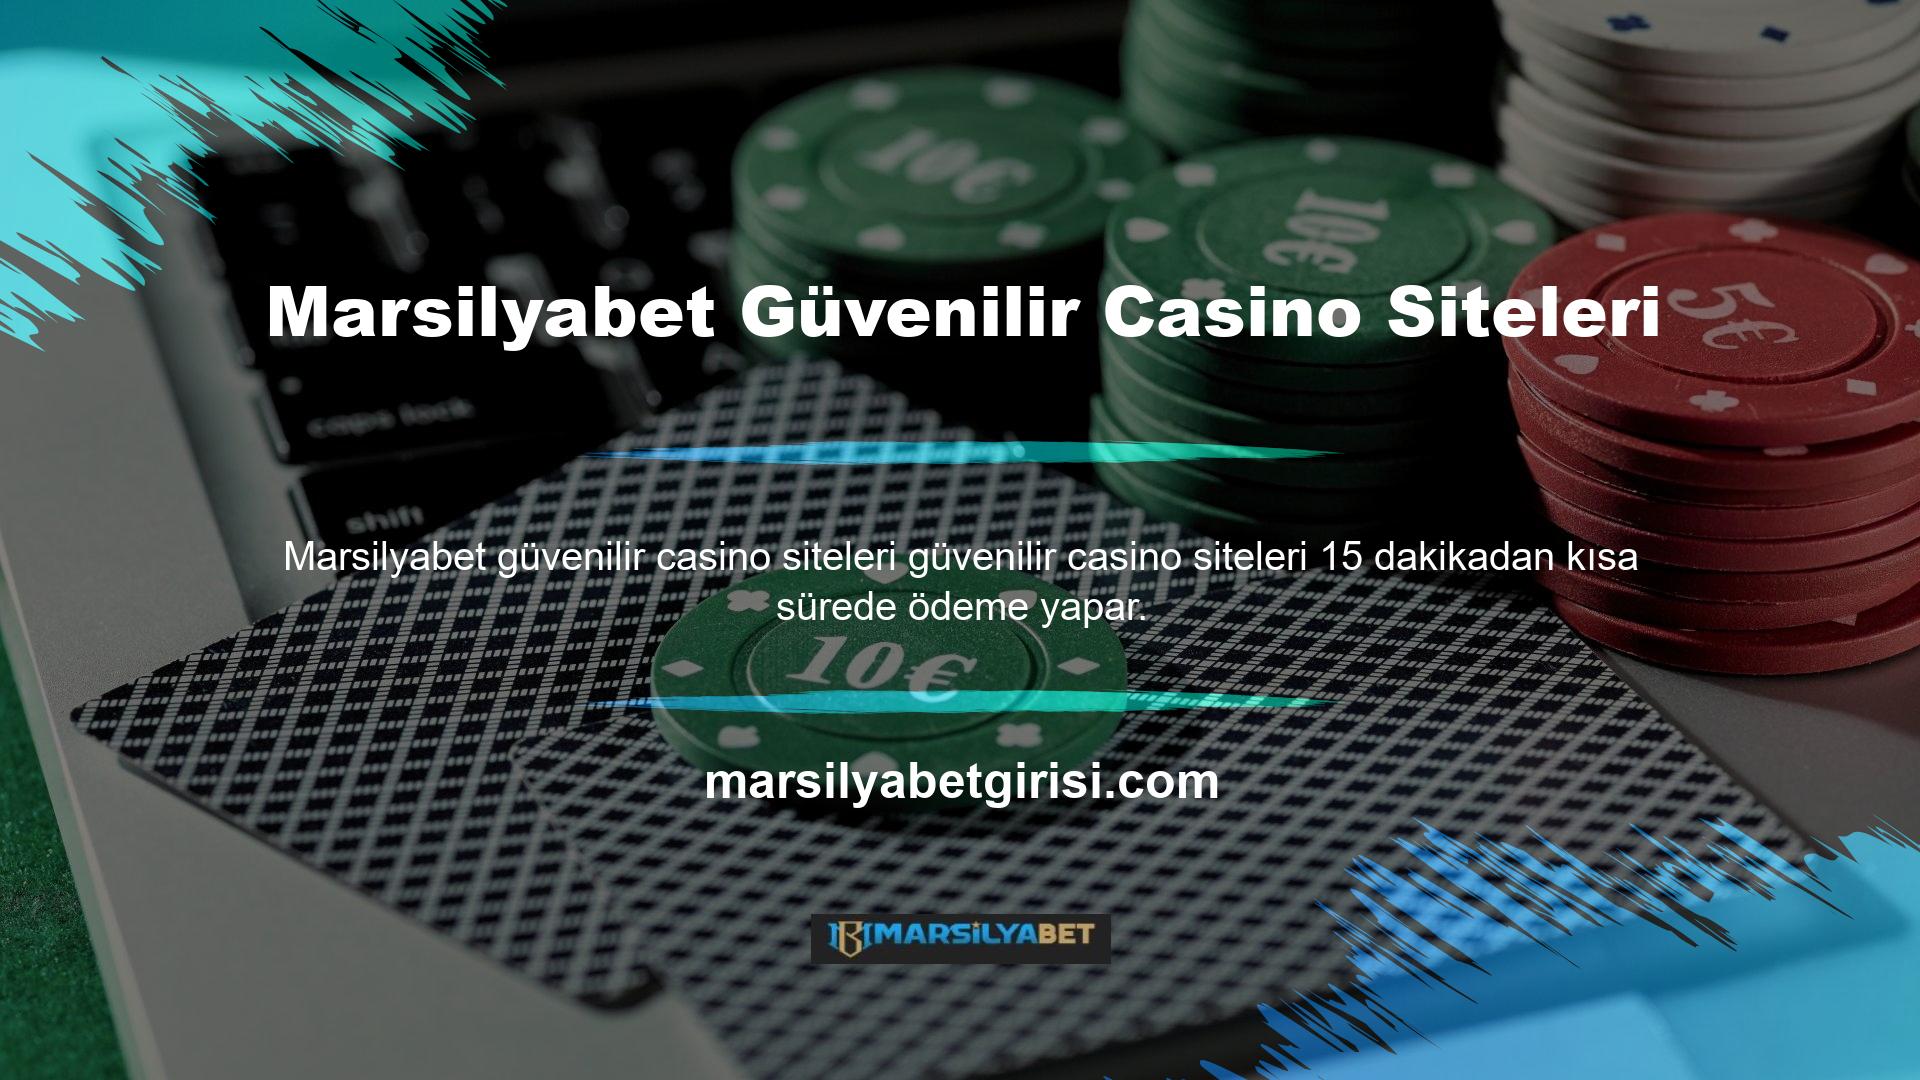 Çevrimiçi casino sektöründe karşılaşılan sitelerin sayısı arttıkça bu makalede anlatılan güvenlik prosedürleri de artmaktadır